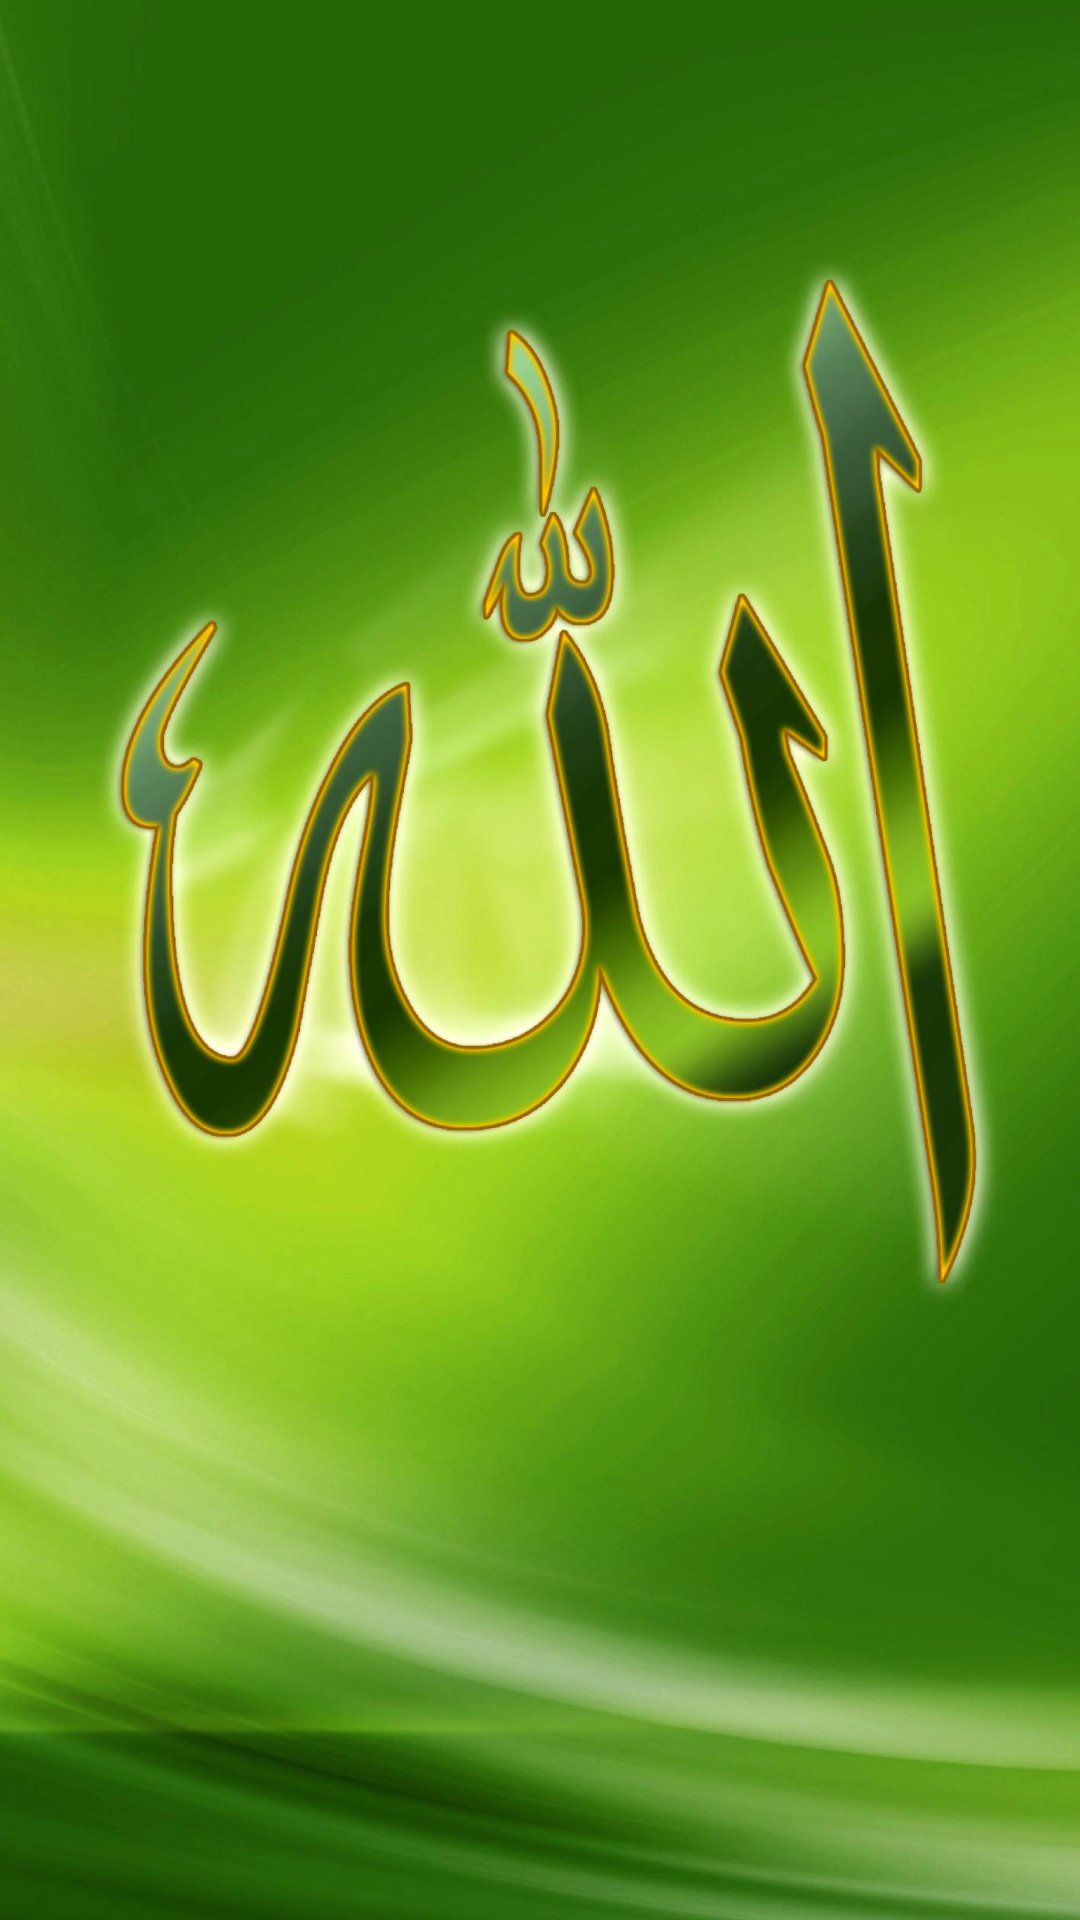 Allah, Islam screenshot #1 1080x1920